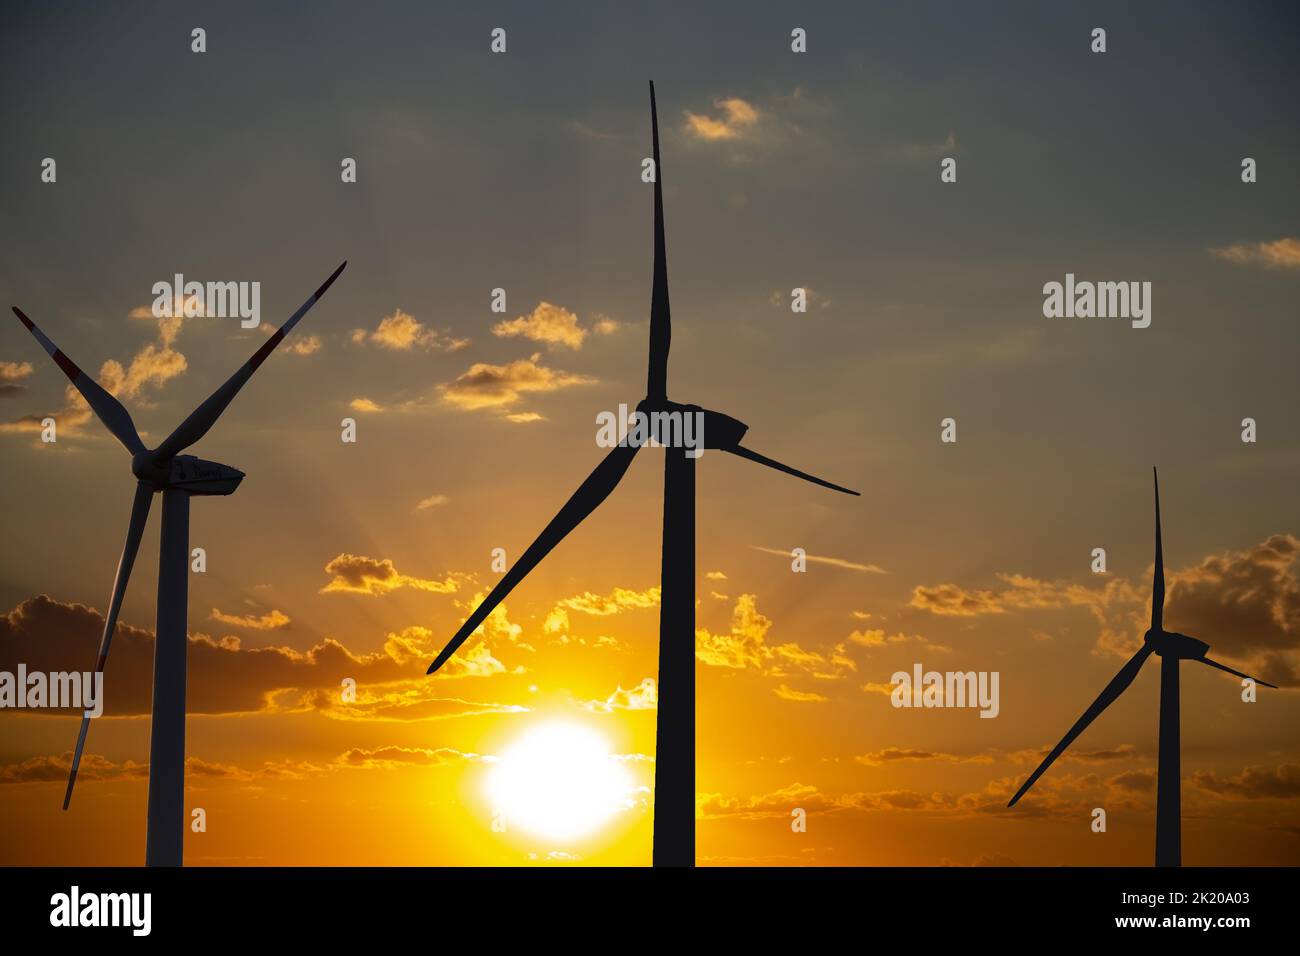 Imagen de símbolo: Aerogeneradores, parque eólico al amanecer (composición) Foto de stock